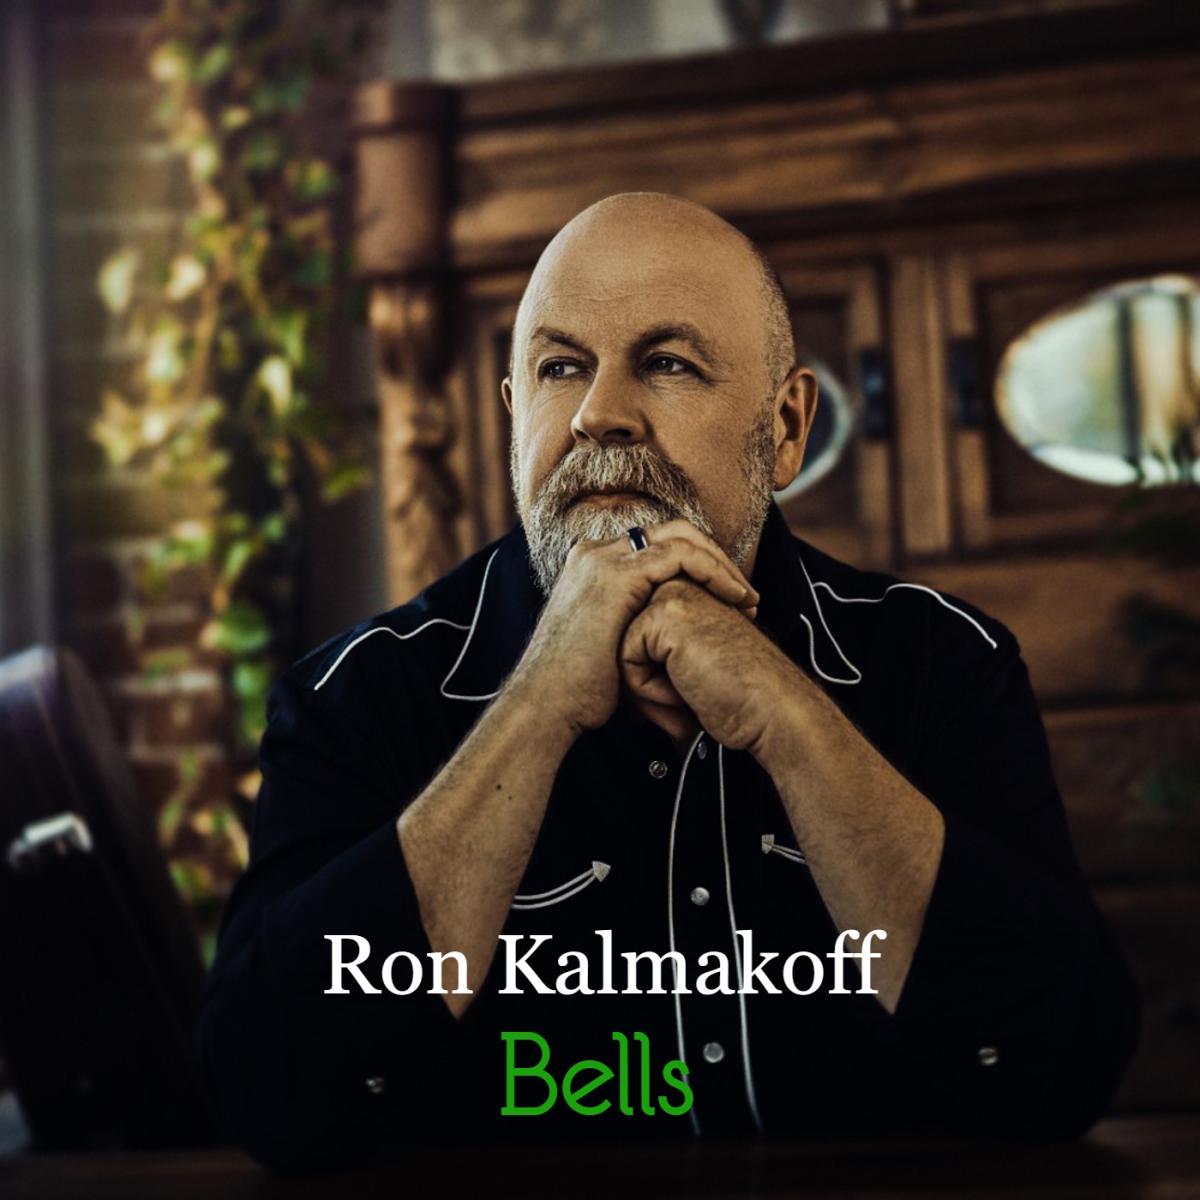 Ron Kalmakoff